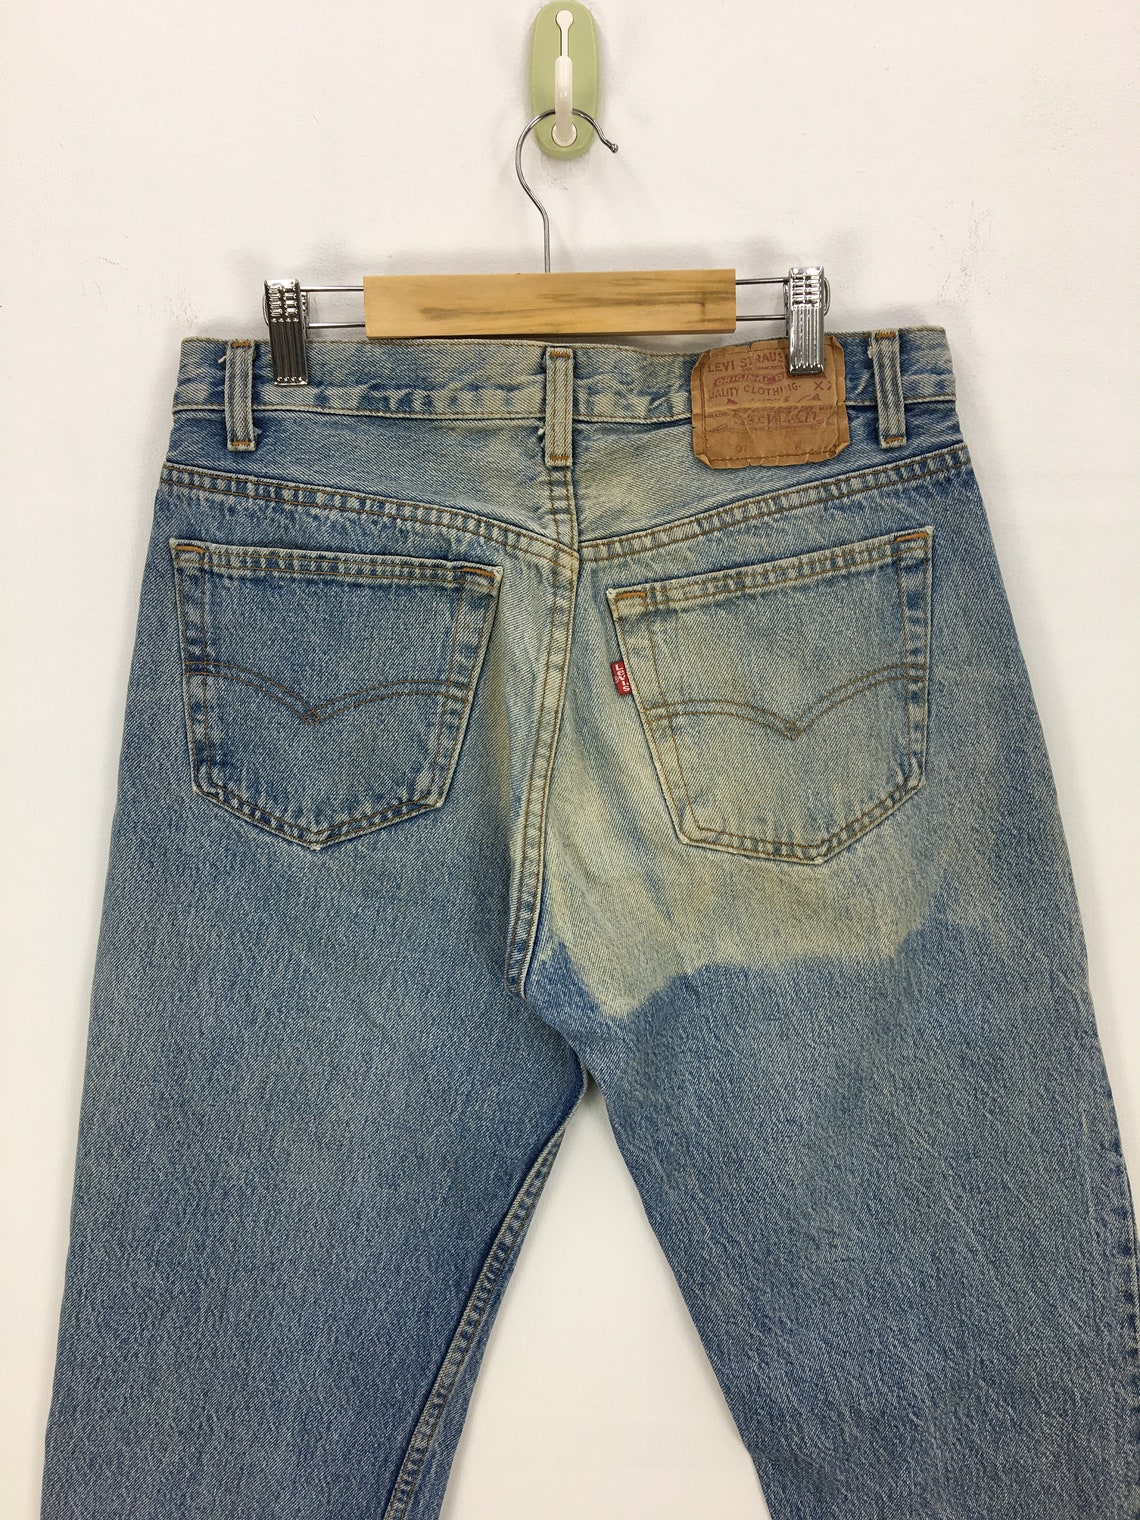 Vintage Levis Jeans Pants Levis 501 Distressed Denim Pants | Etsy